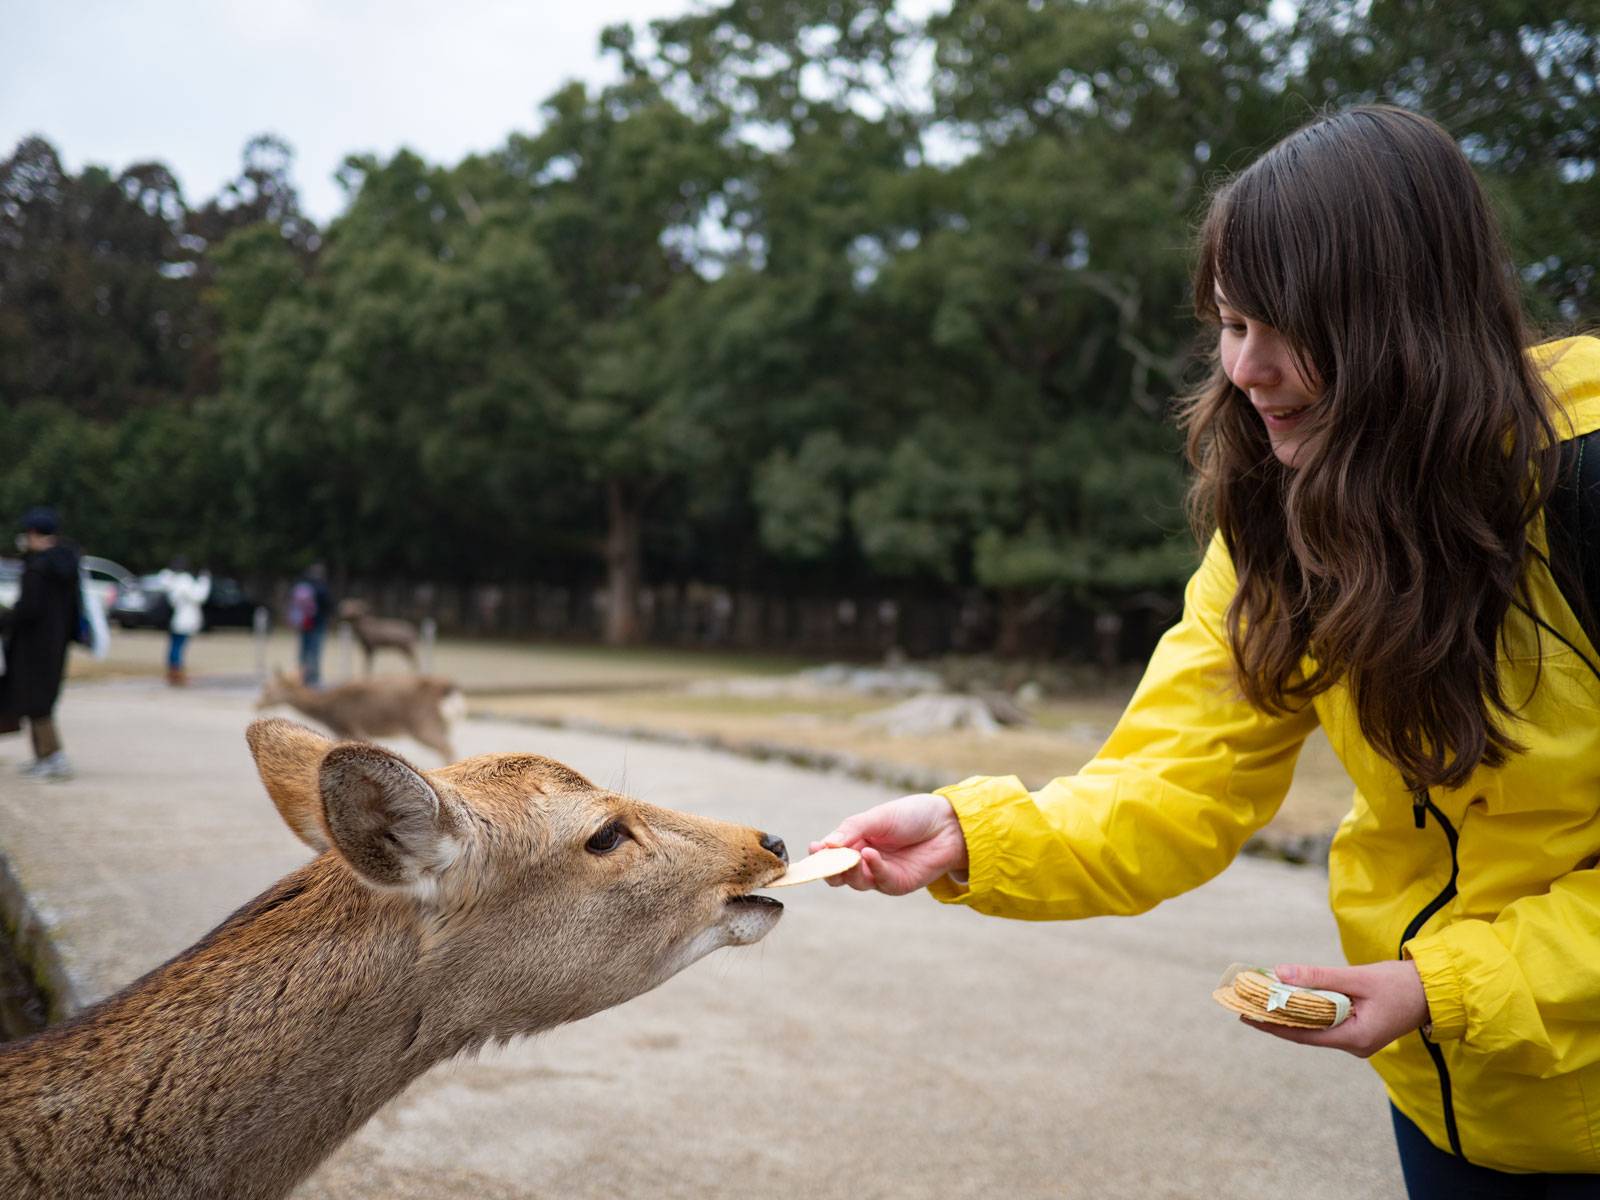 Alyssa feeding a deer